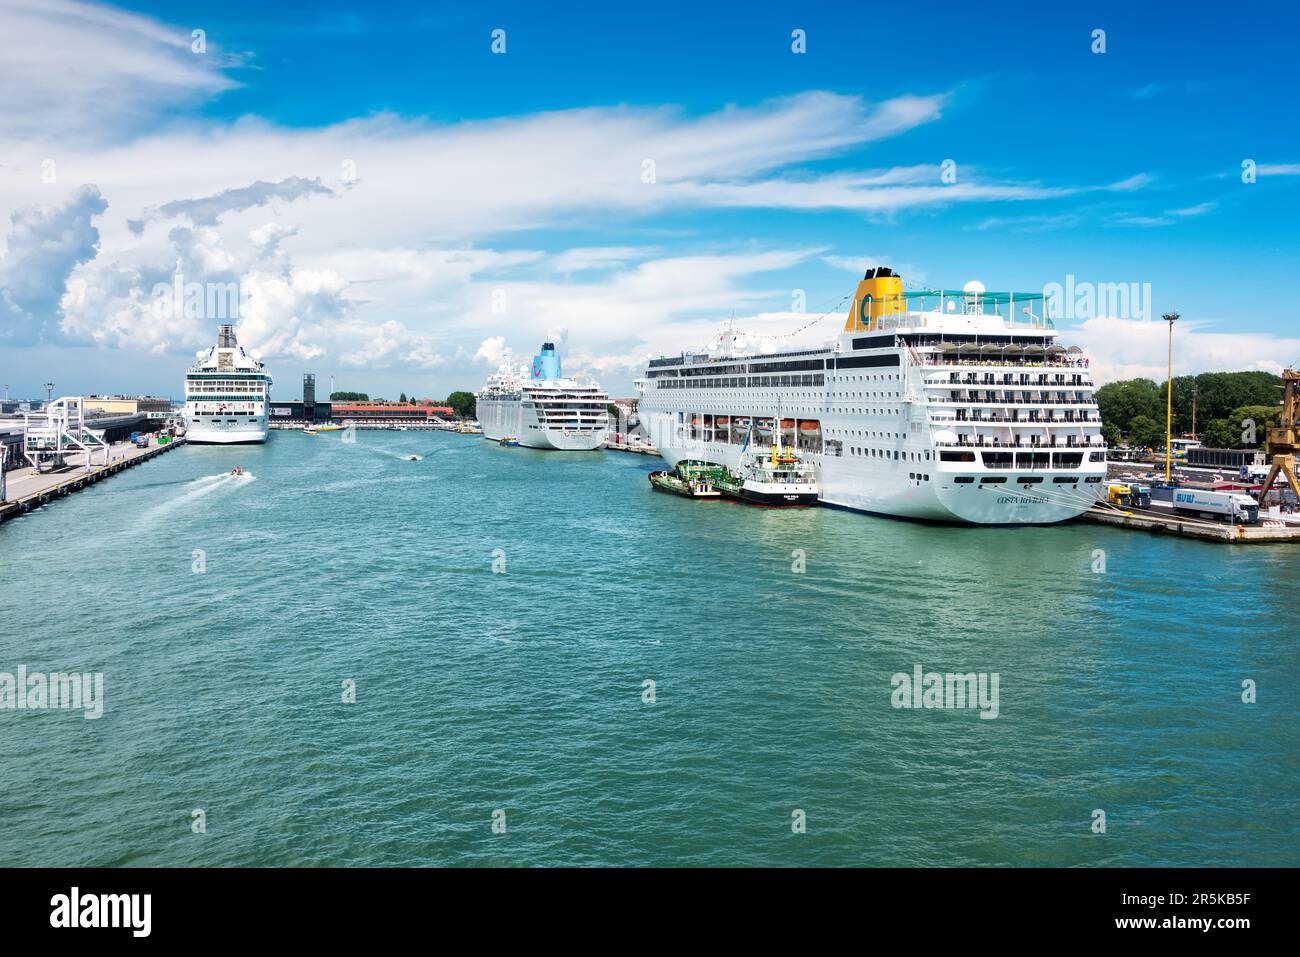 Venedig, Italien - 13. Juni 2016: Der Kreuzfahrthafen von Venedig ist einer der geschäftigsten im Mittelmeer und bringt jedes Jahr fast 500 Schiffe an. Stockfoto